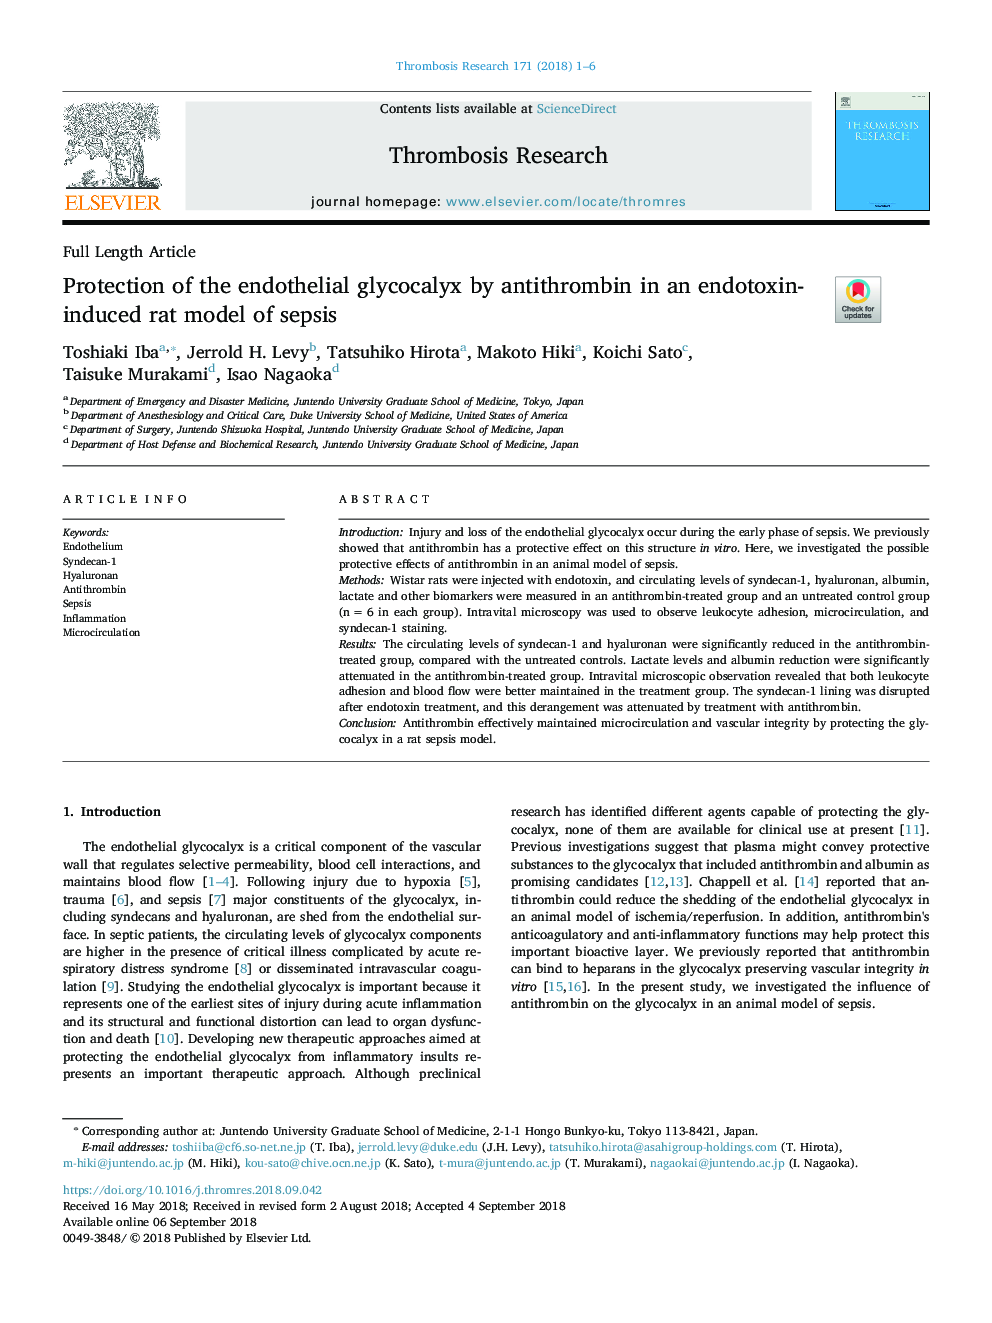 حفاظت از گلیکوکالیک آندوتلیال توسط آنتی ترومبین در یک مدل موشهای مبتلا به سپتیس ناشی از اندوتوکسین